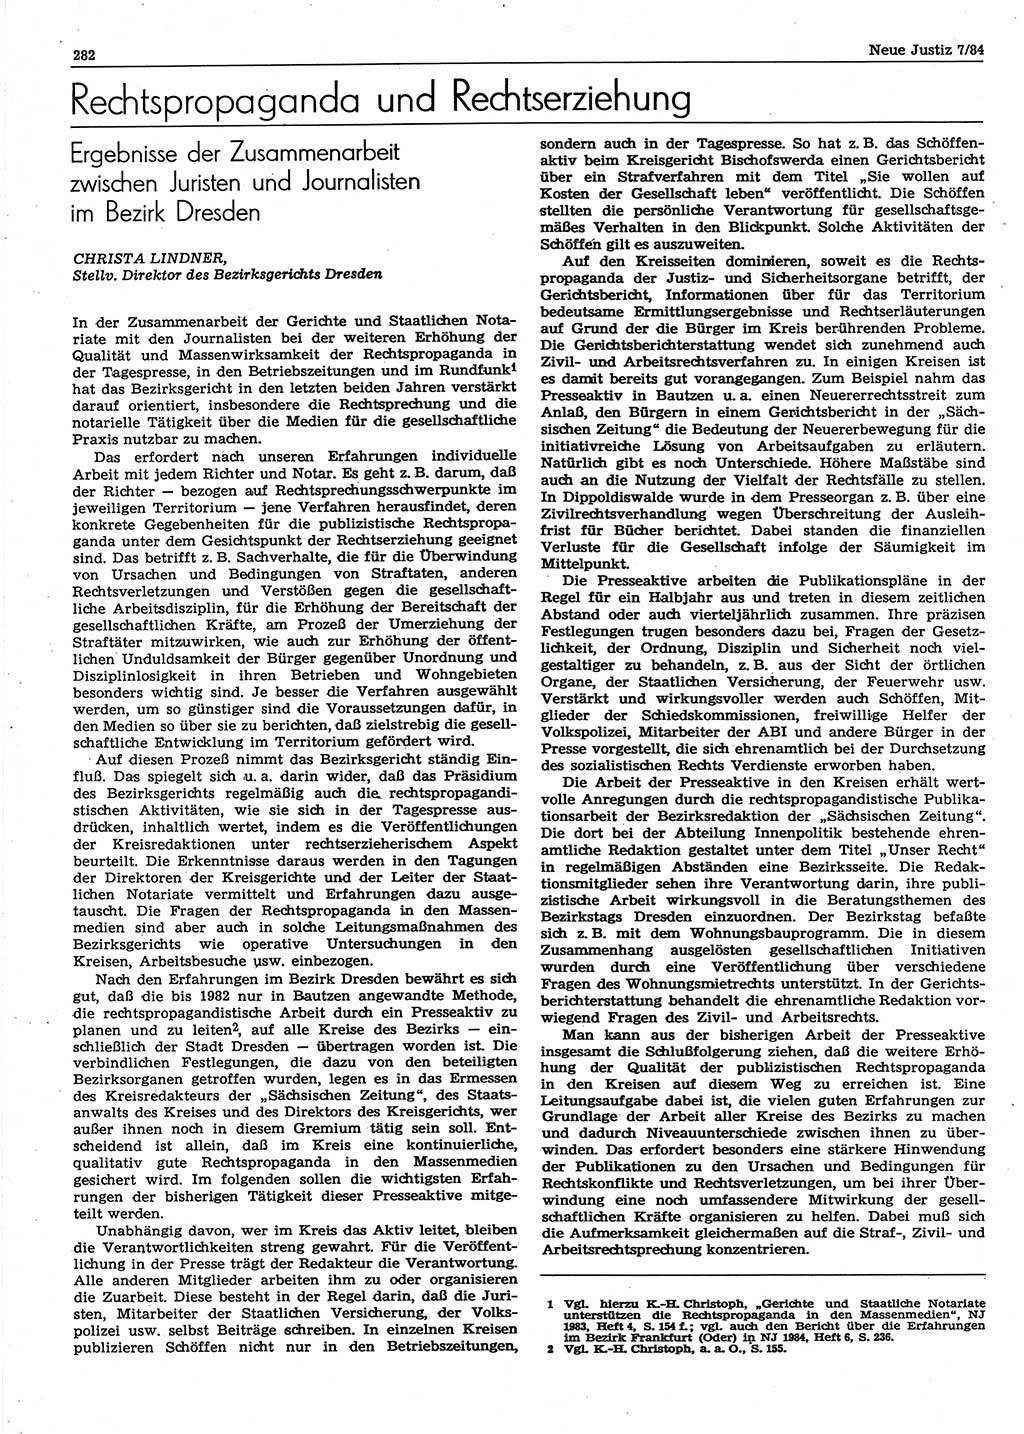 Neue Justiz (NJ), Zeitschrift für sozialistisches Recht und Gesetzlichkeit [Deutsche Demokratische Republik (DDR)], 38. Jahrgang 1984, Seite 282 (NJ DDR 1984, S. 282)